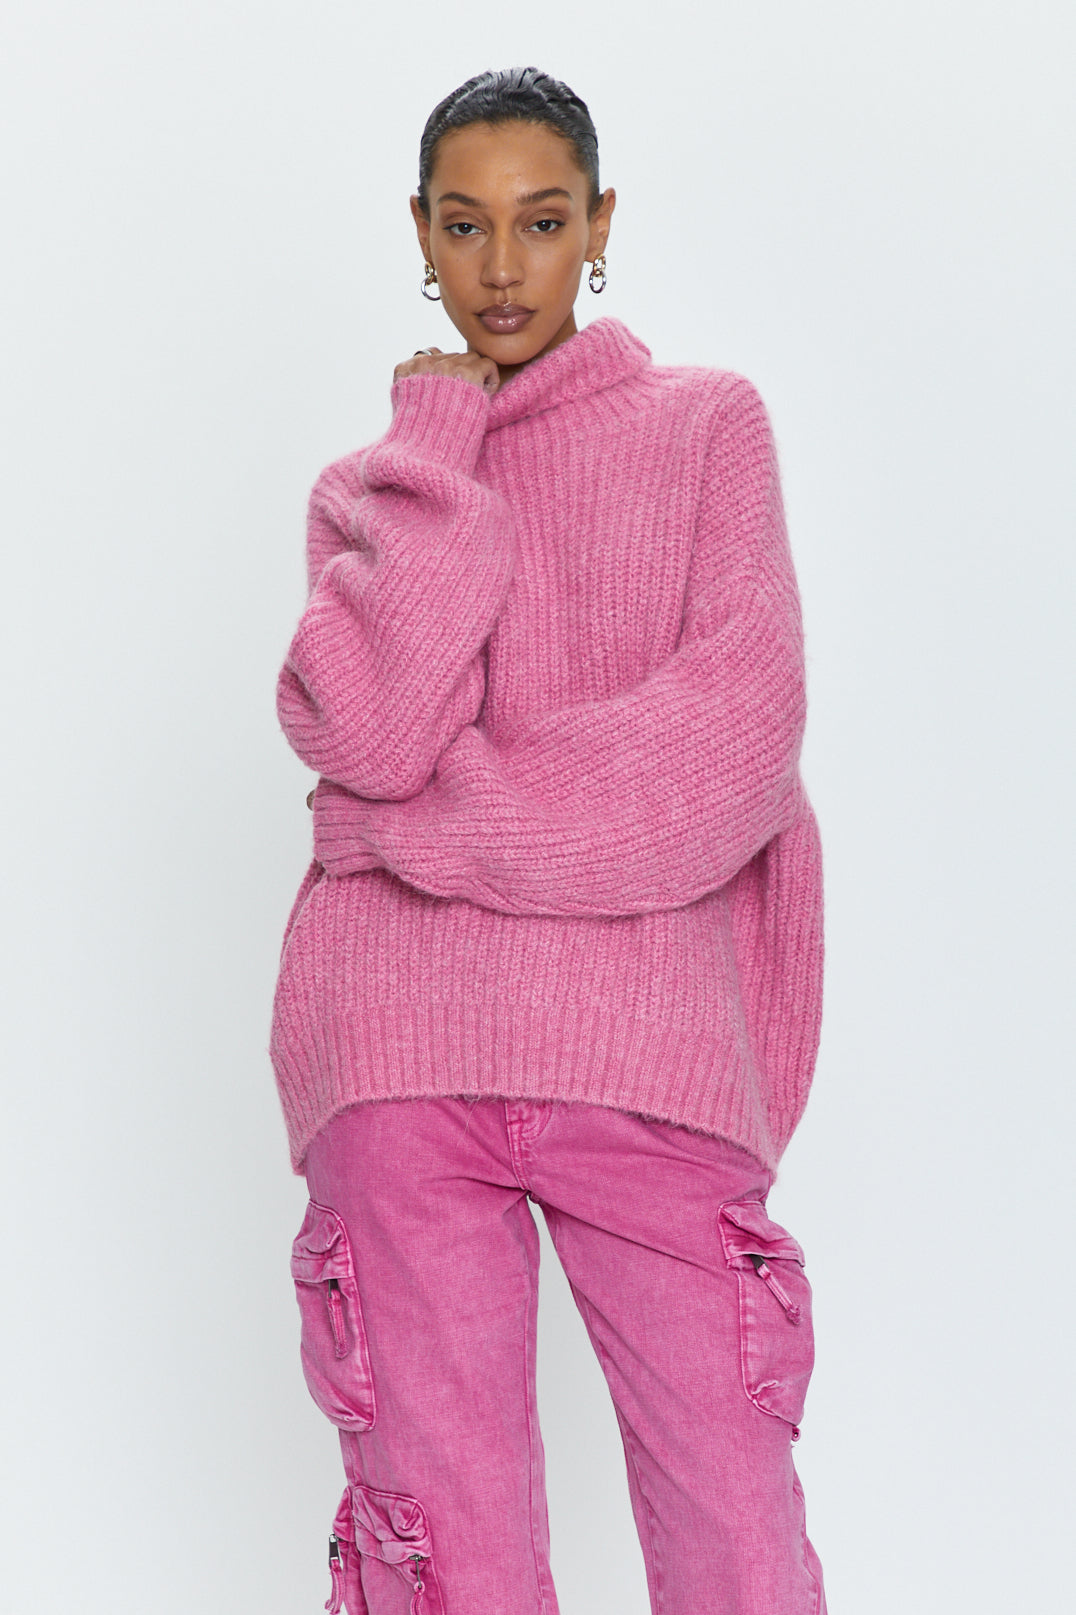 Ashley Turtleneck Sweater - Aurora Pink
            
              Sale